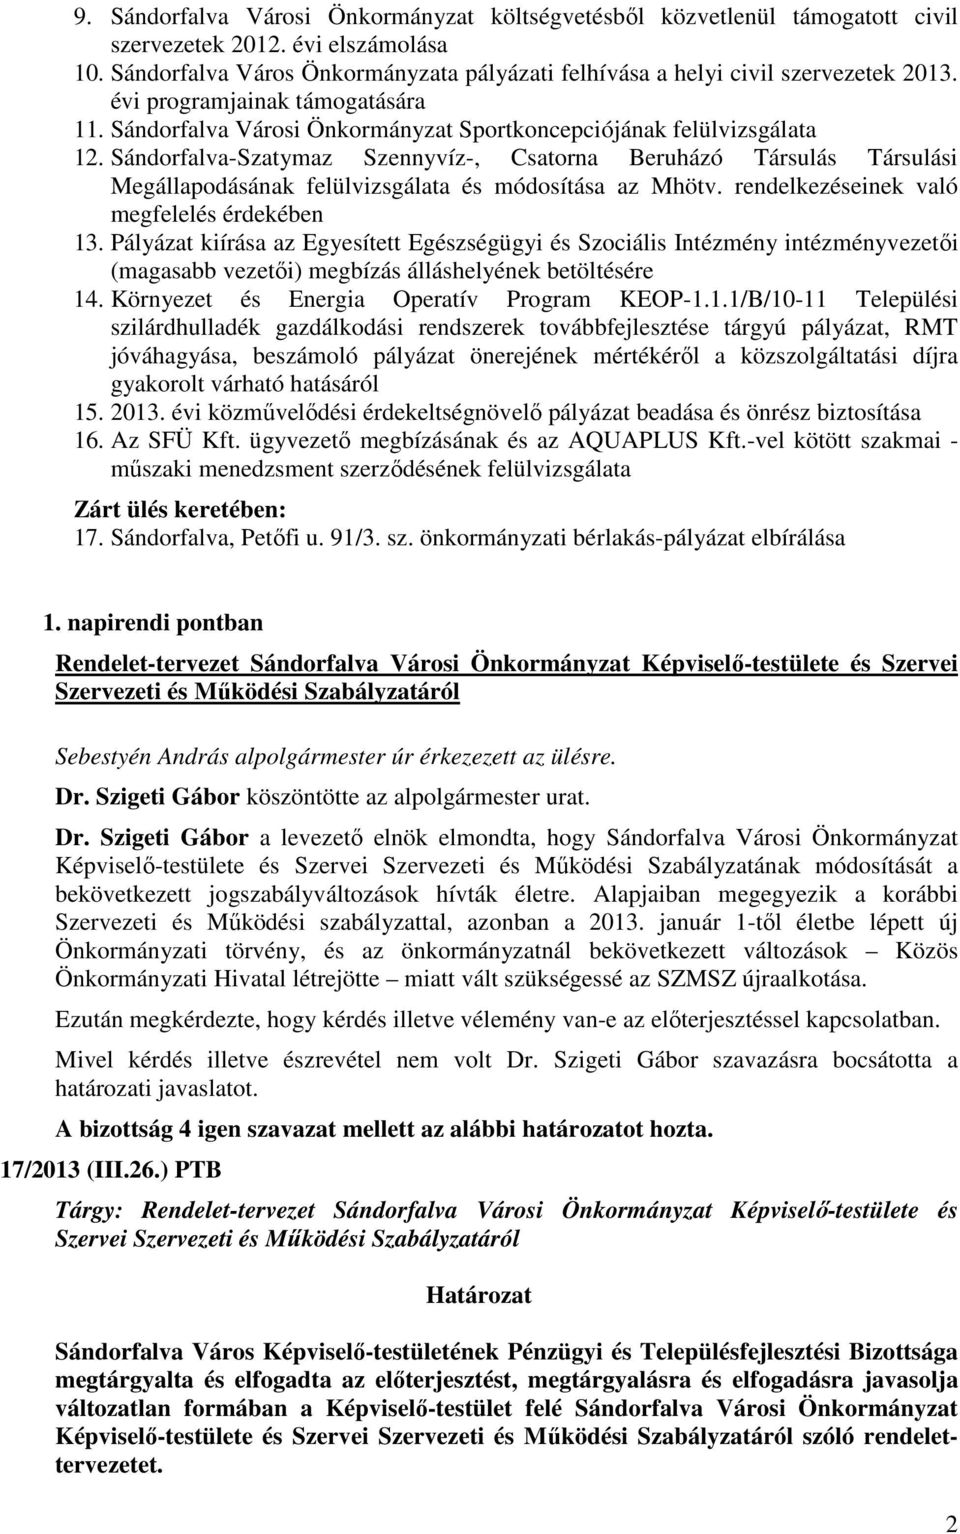 Sándorfalva-Szatymaz Szennyvíz-, Csatorna Beruházó Társulás Társulási Megállapodásának felülvizsgálata és módosítása az Mhötv. rendelkezéseinek való megfelelés érdekében 13.